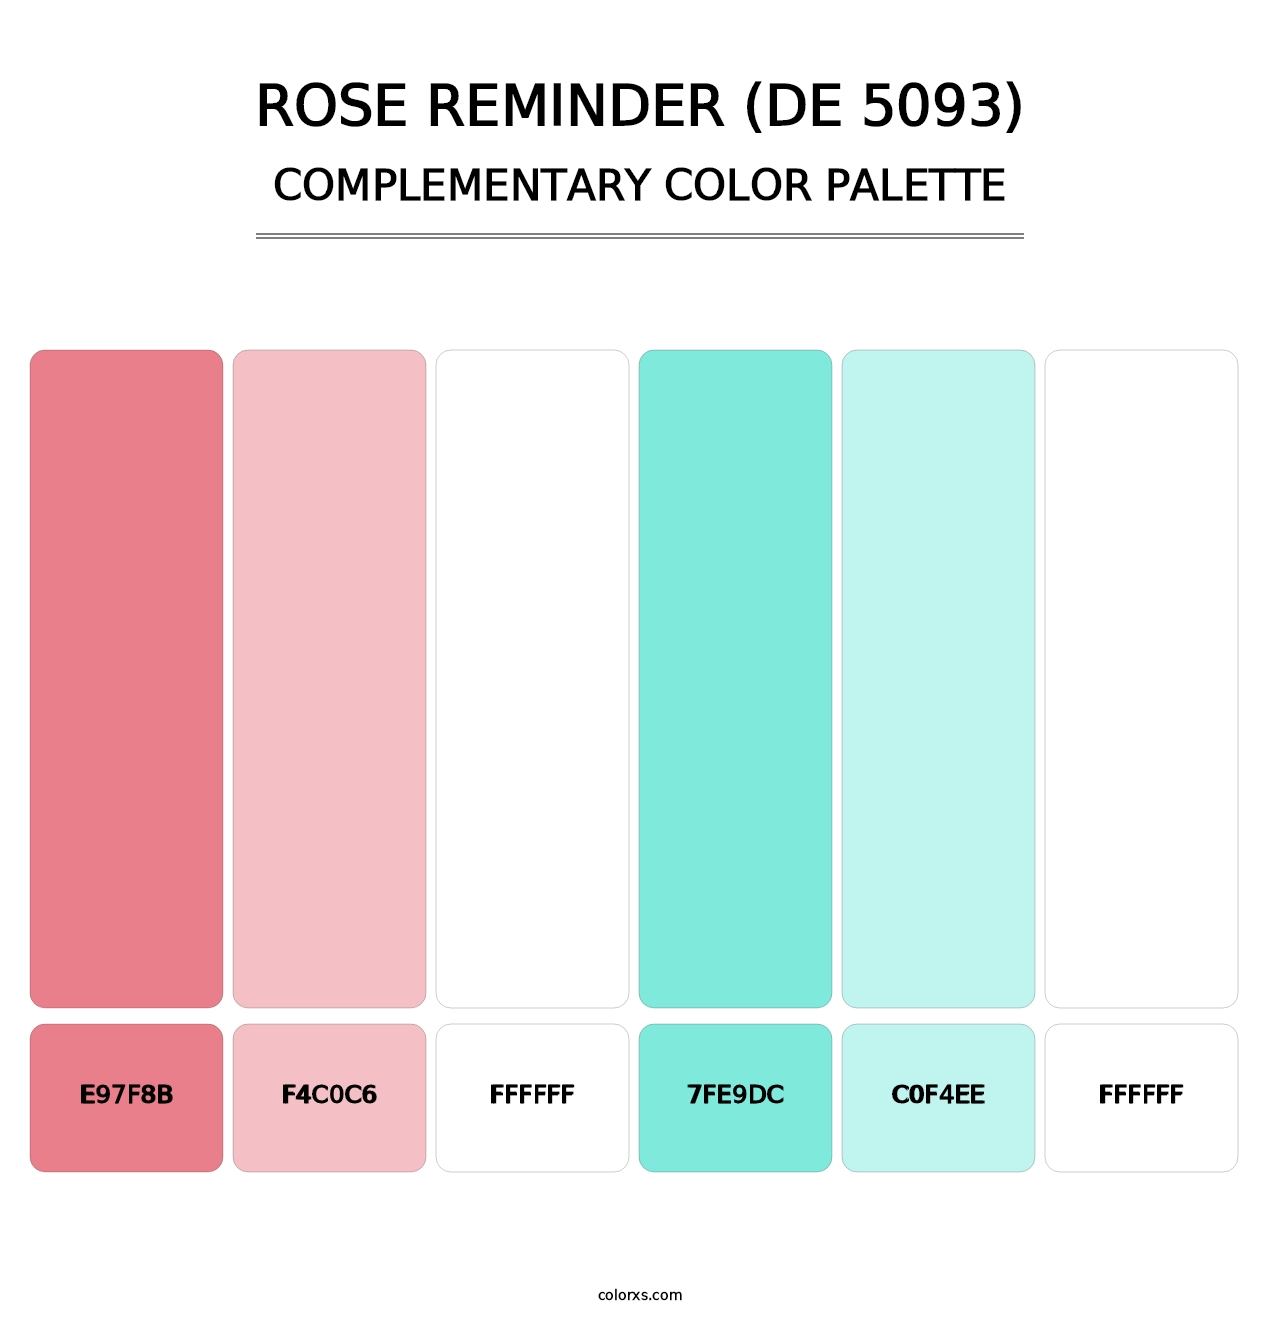 Rose Reminder (DE 5093) - Complementary Color Palette